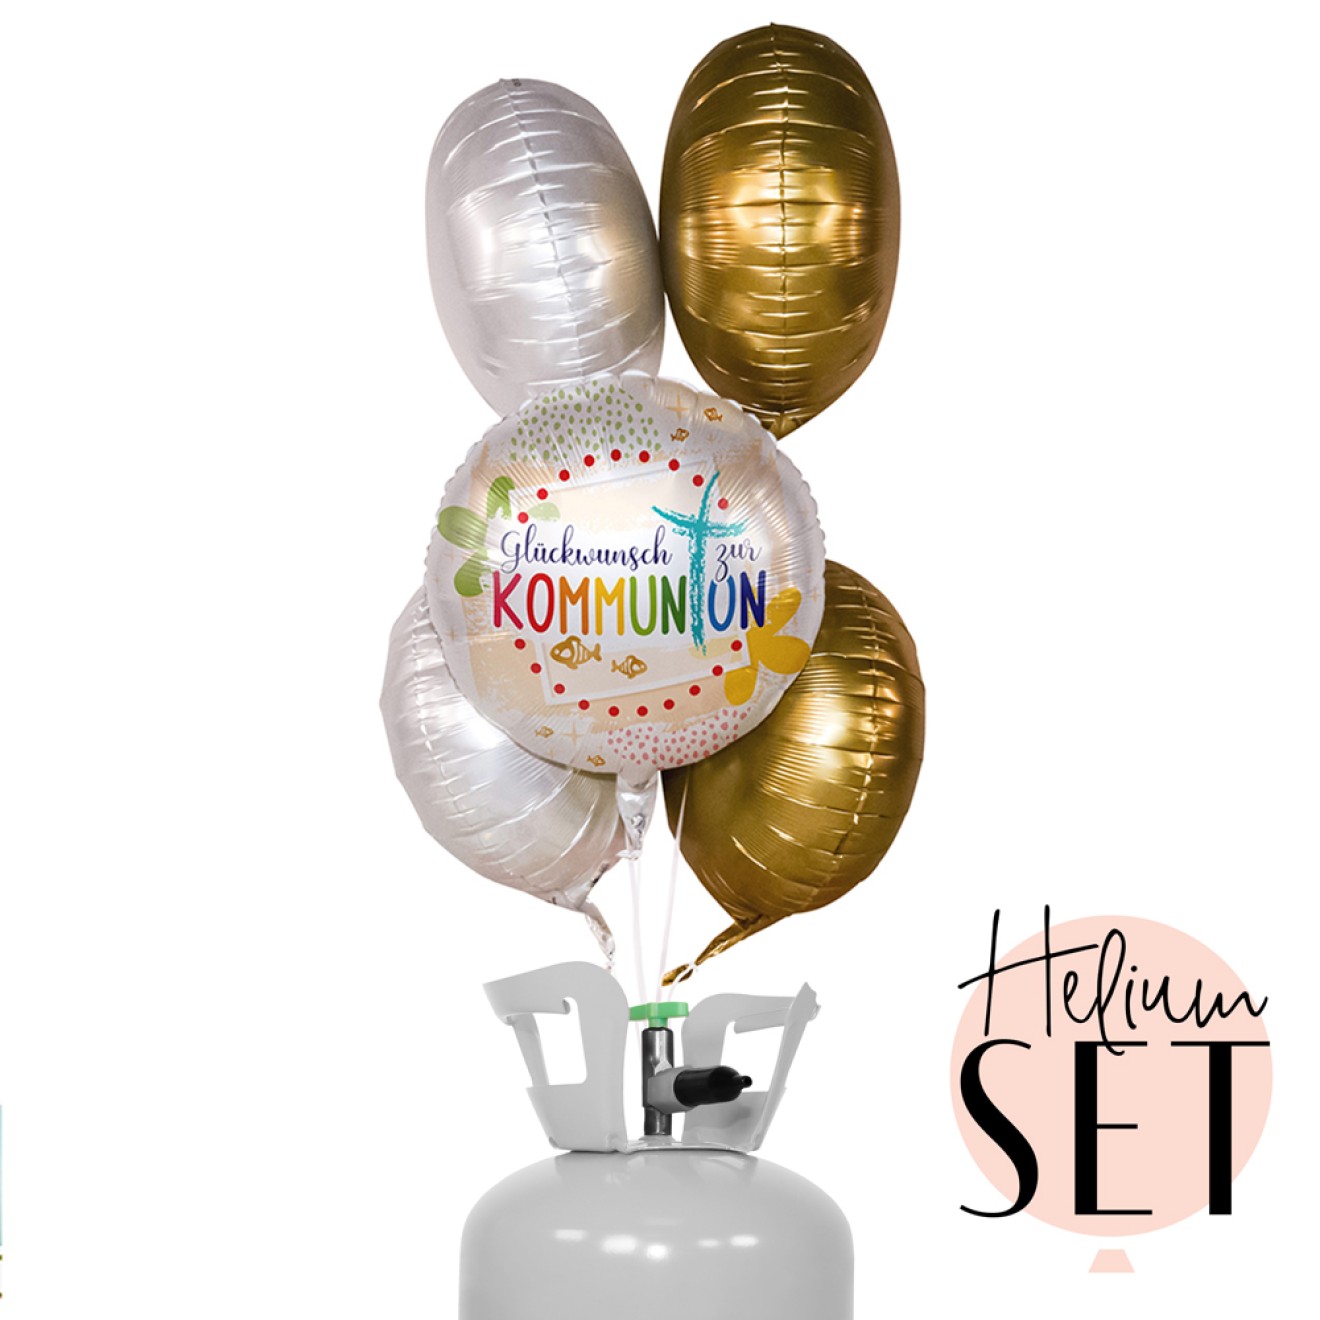 Helium Set - Kommunion Glückwunsch